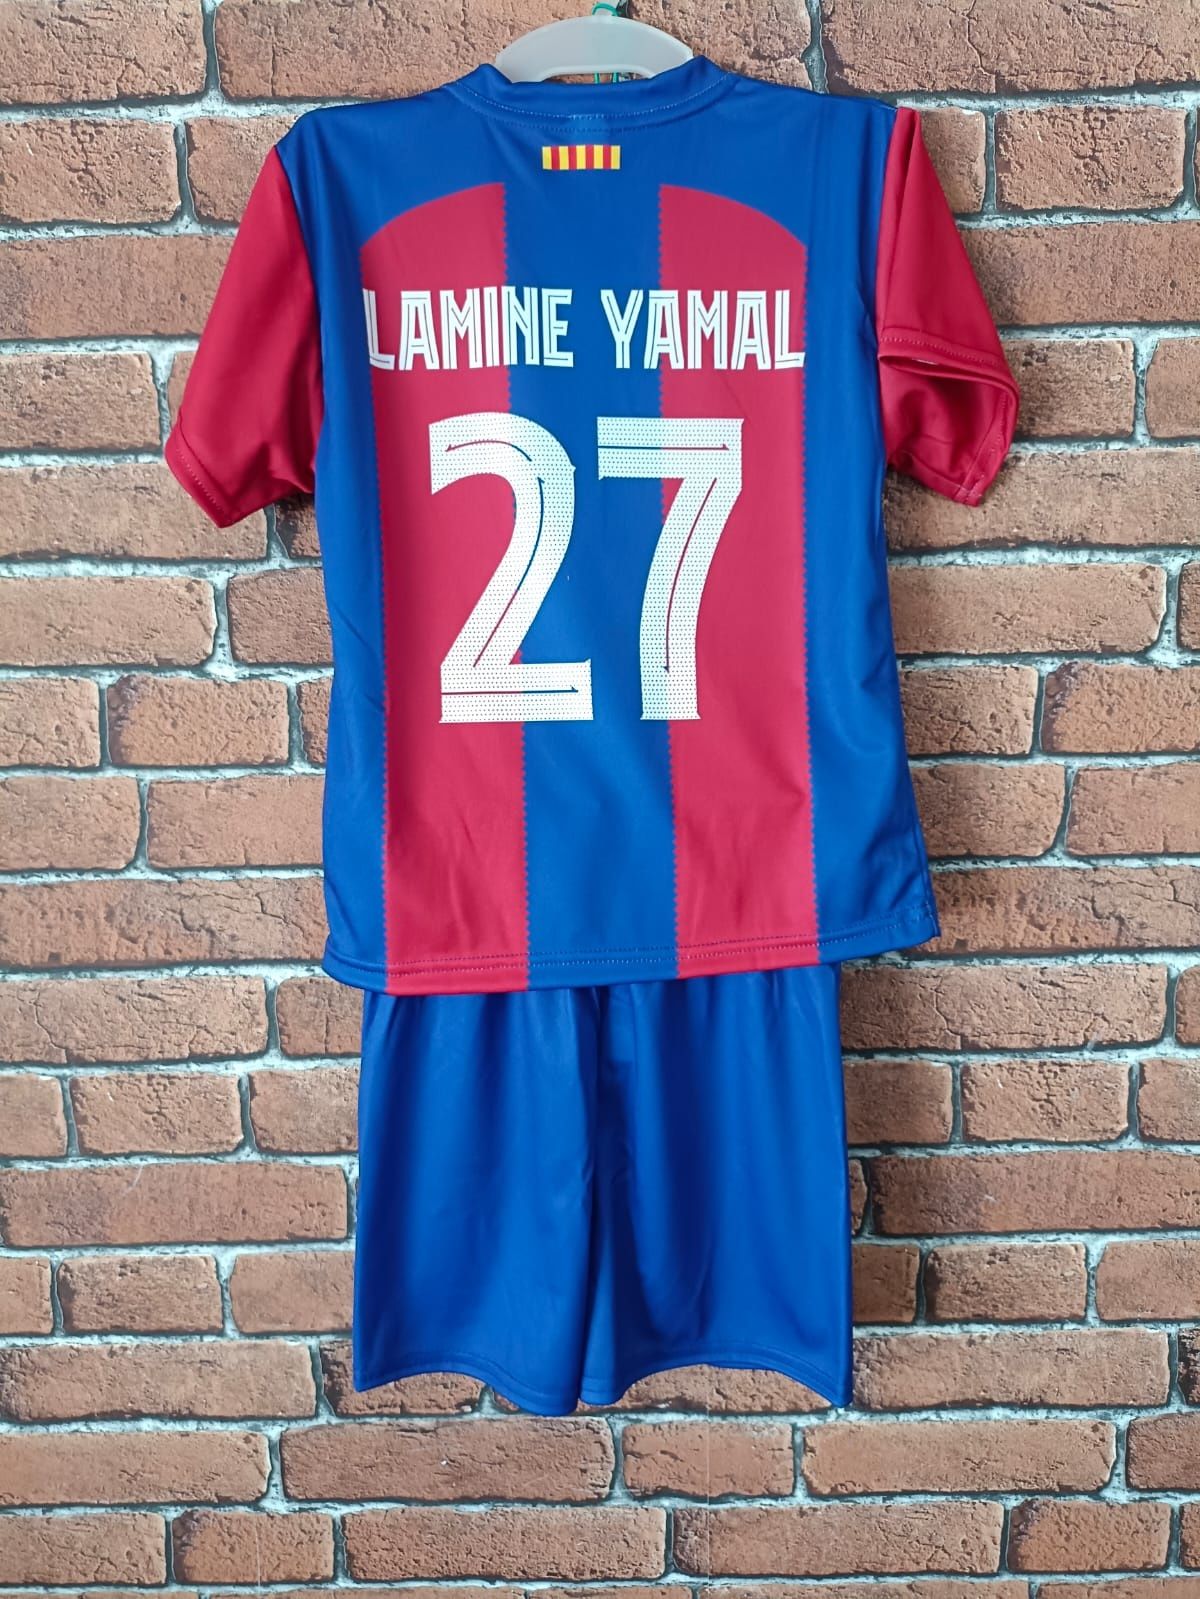 Strój piłkarski dziecięcy FC Barcelona Lamine Yamal rozm. 122